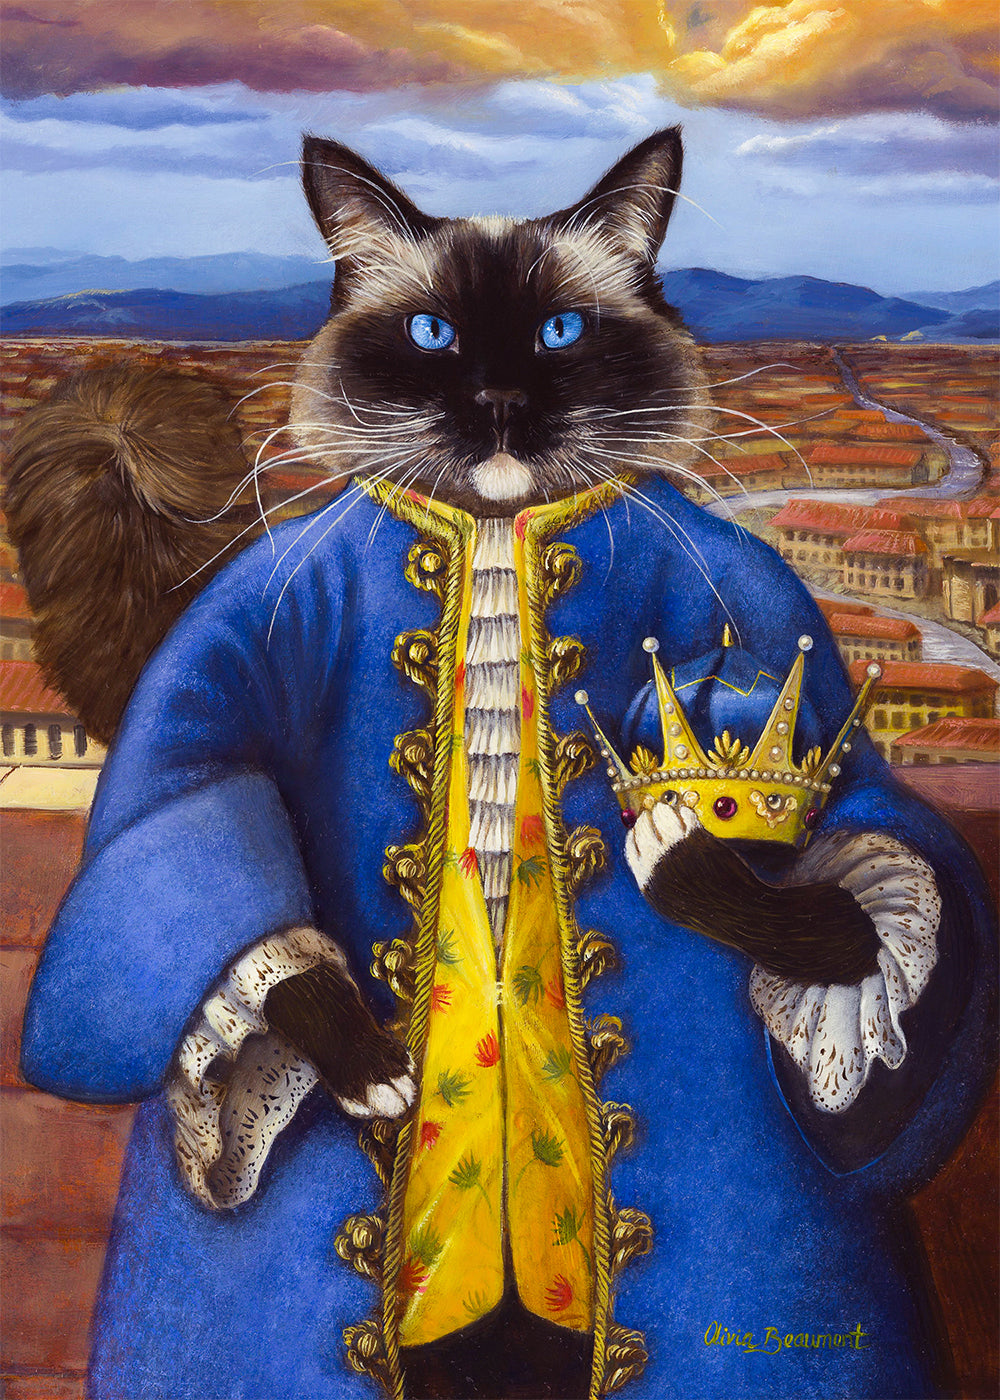 Emperor Cloonie - cat prints